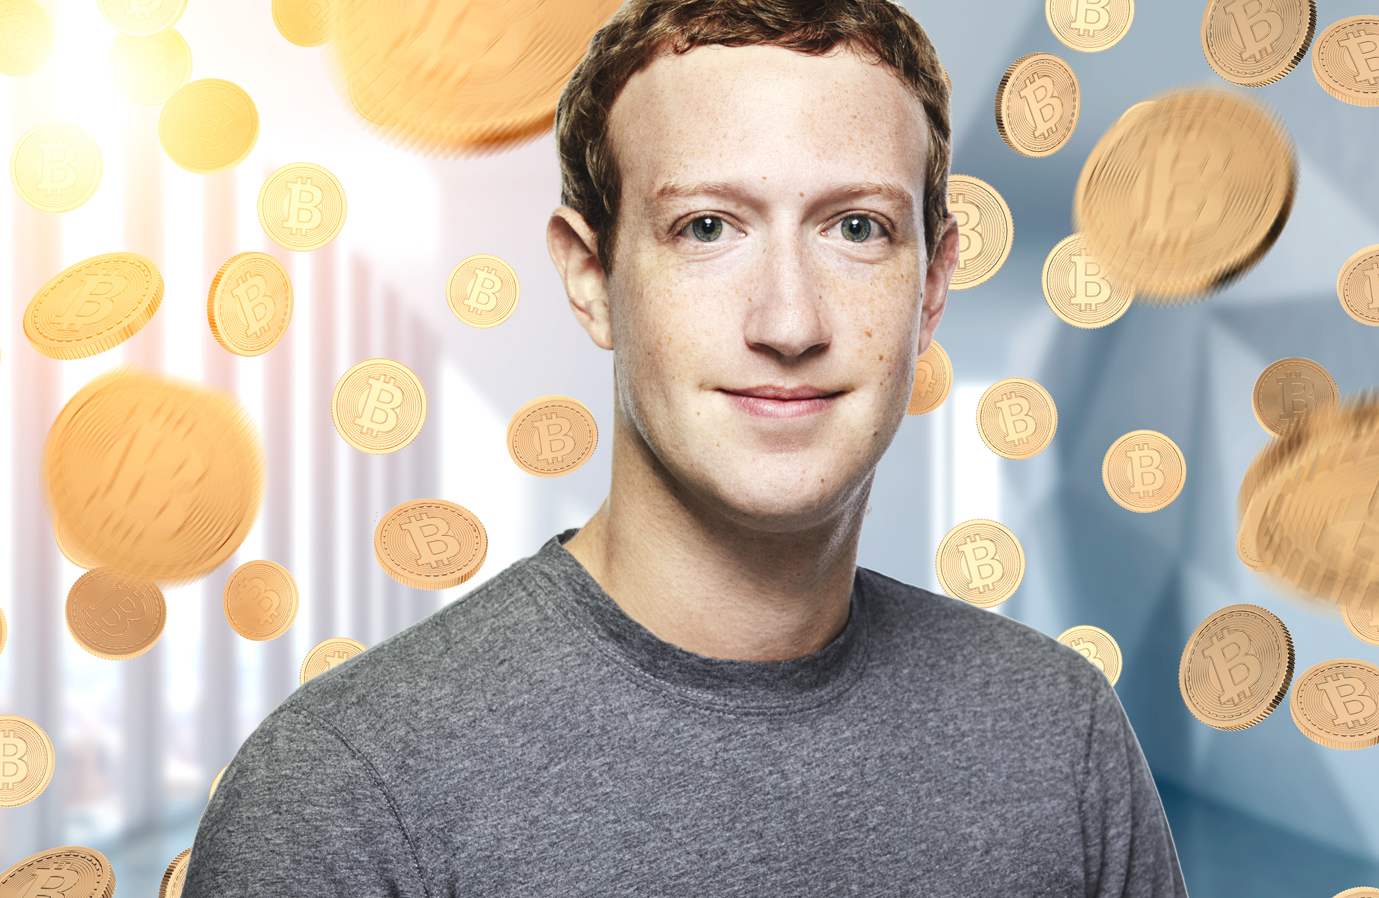 Bitcoin Mark Zuckerberg Facebook